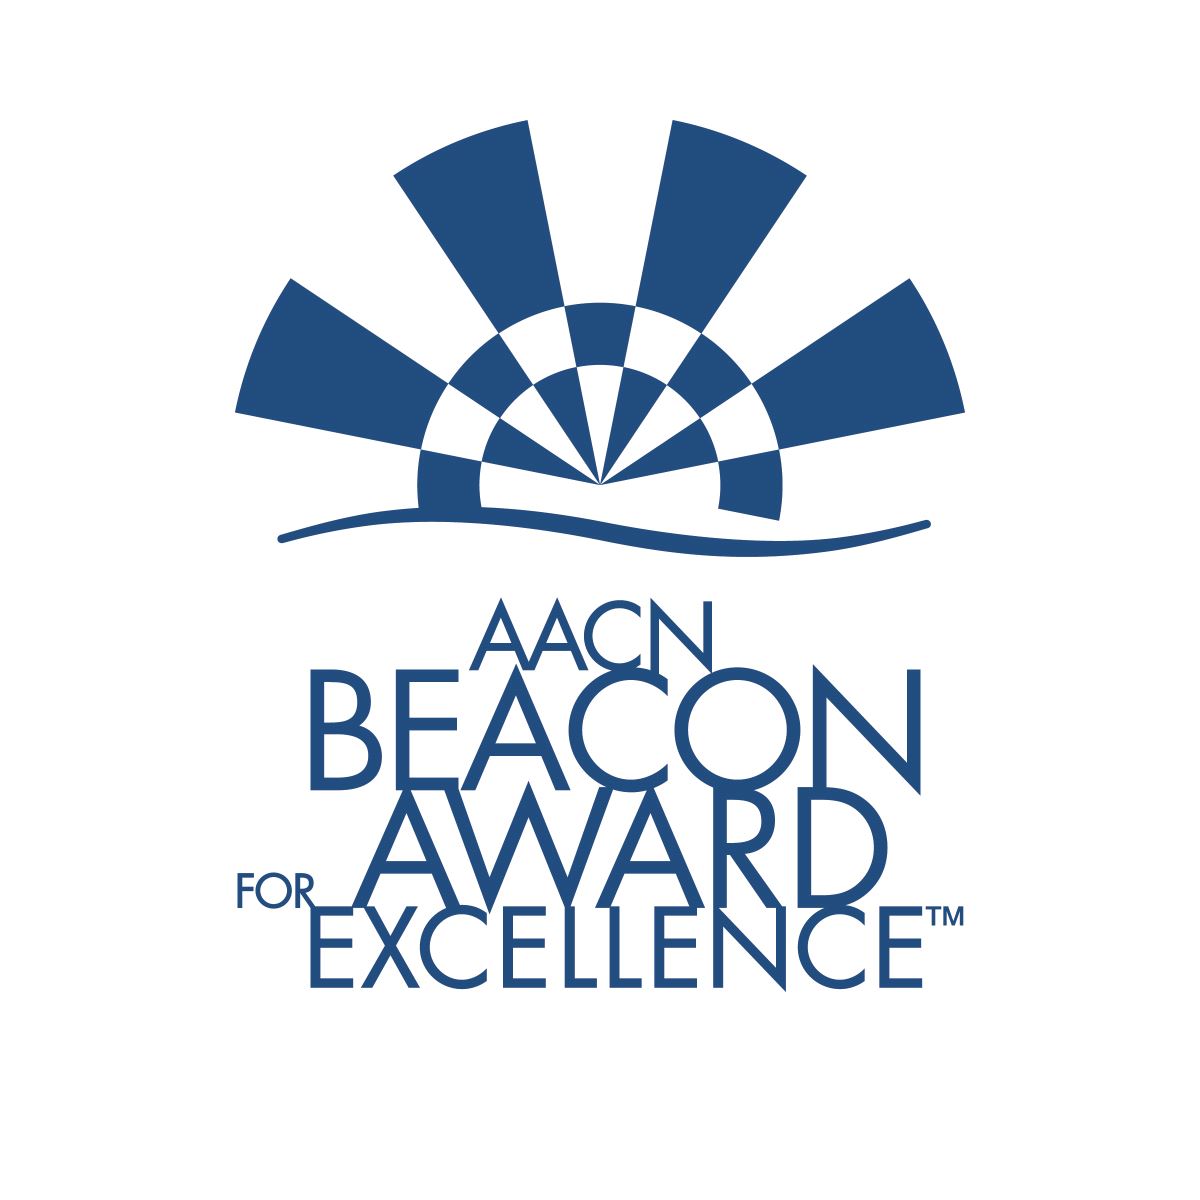 PICU beacon award